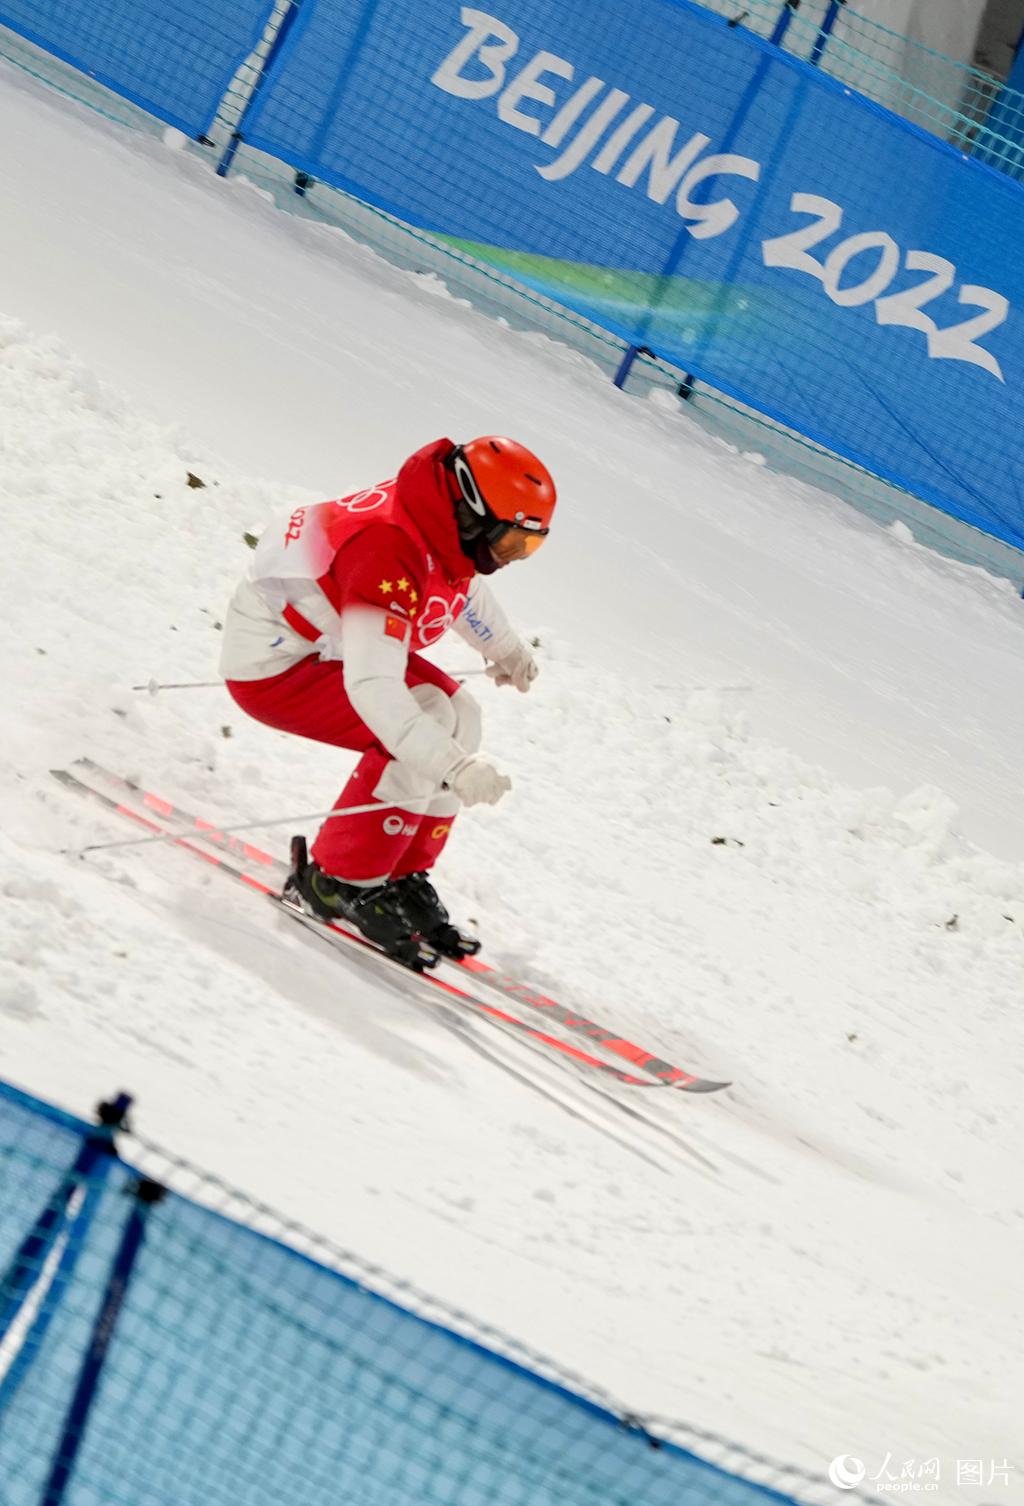 2月3日晚，北京冬奧會自由式滑雪雪上技巧男子資格賽第一輪比賽在張家口賽區舉行，圖為中國隊選手趙洋在比賽中起跳騰空展示空中技術動作和落地瞬間。這是冬奧歷史上該項目的首位中國選手。人民網記者蔣雨師攝